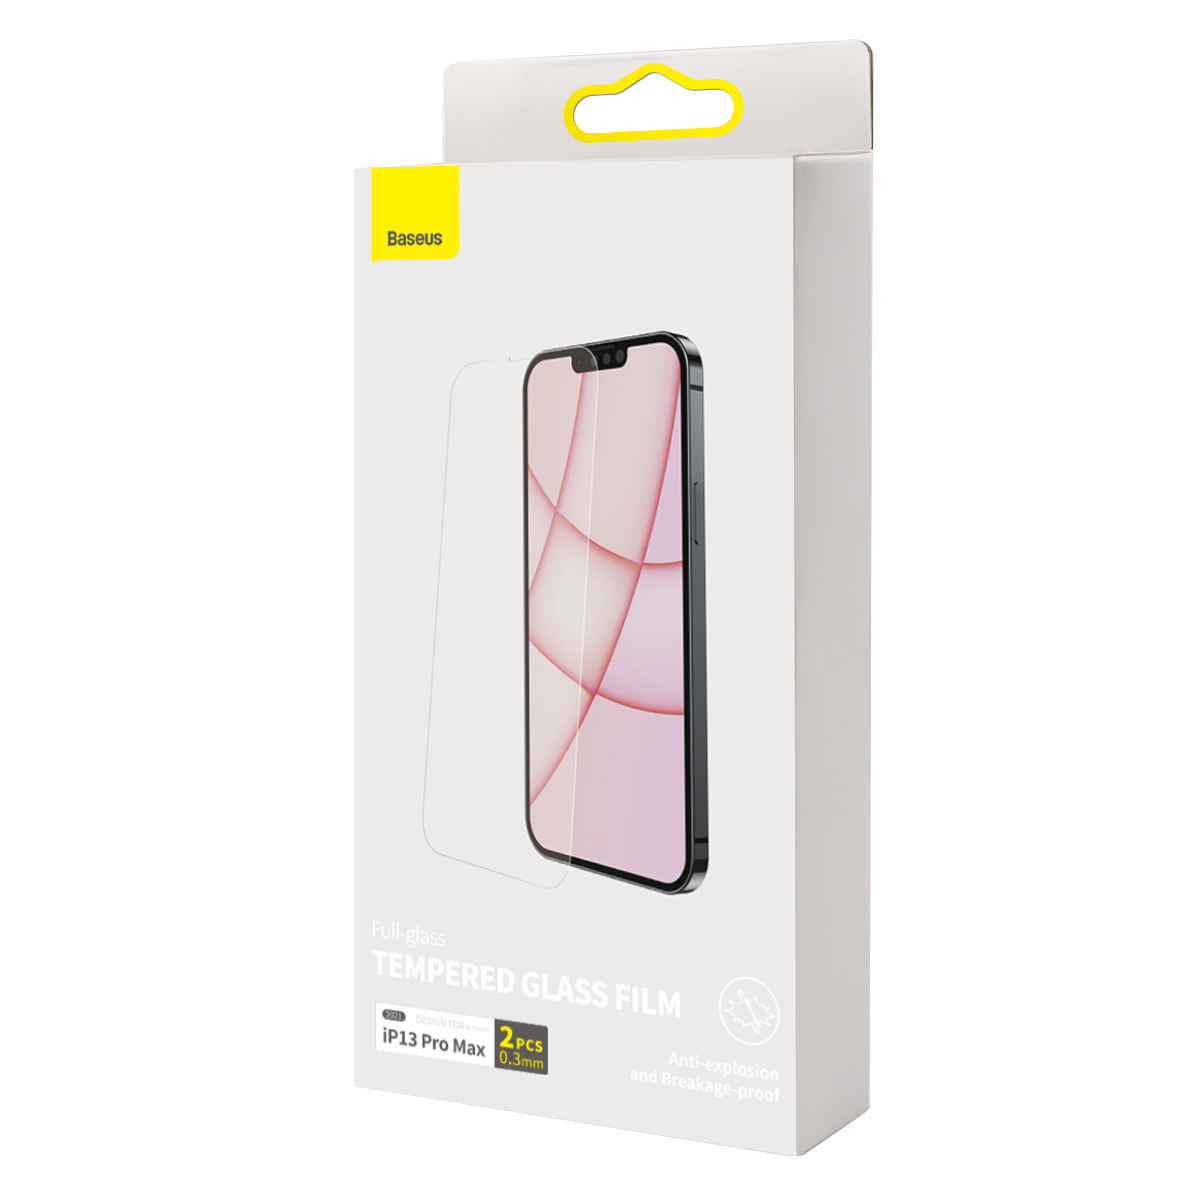 Baseus skärmskydd i härdat glas, iPhone 13 Pro Max, 0.3mm, 2st